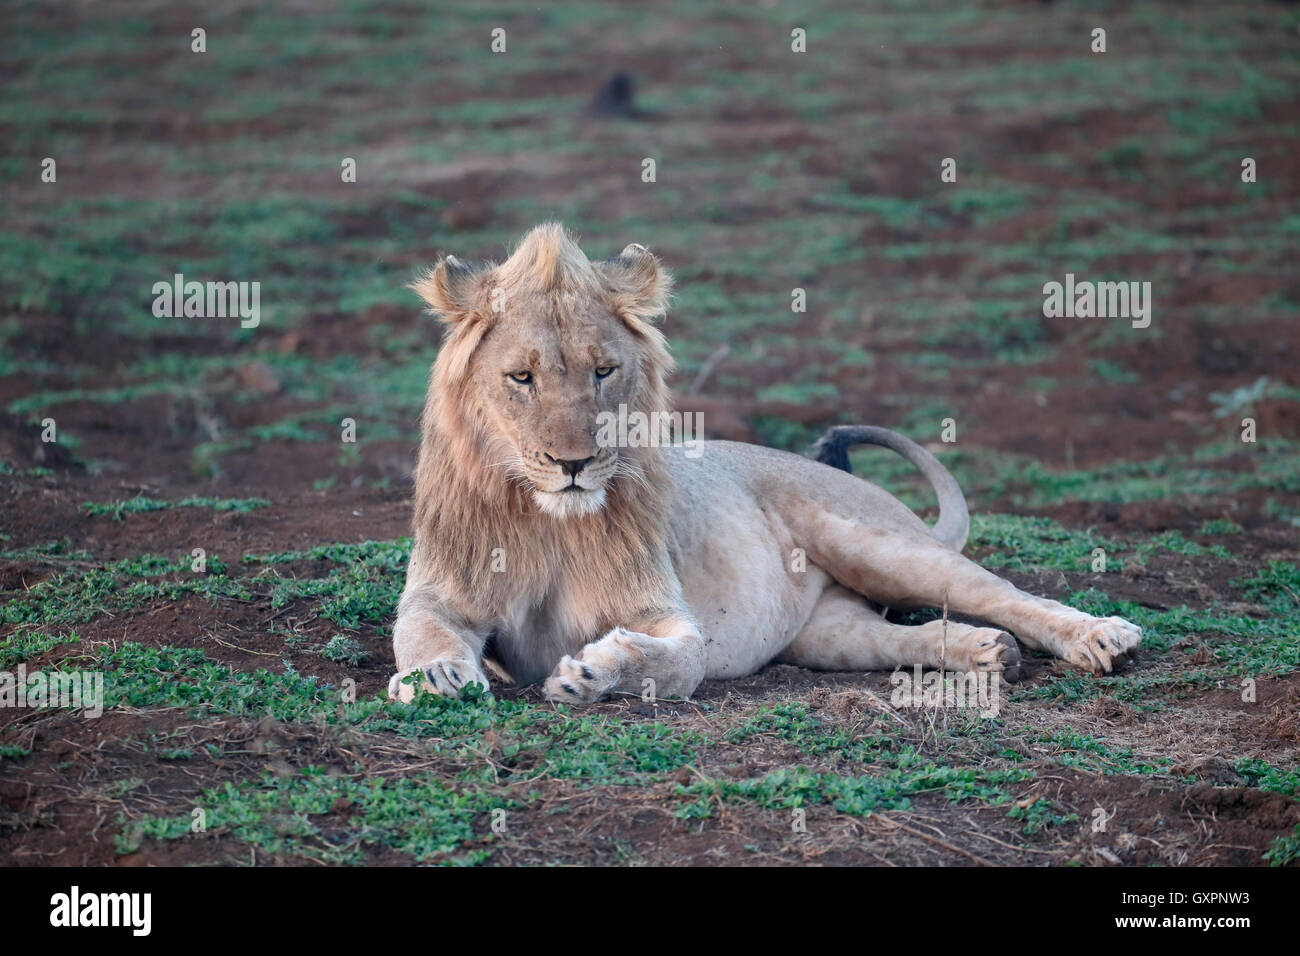 León Africano, Panthera leo, varón soltero, Sudáfrica, agosto de 2016 Foto de stock